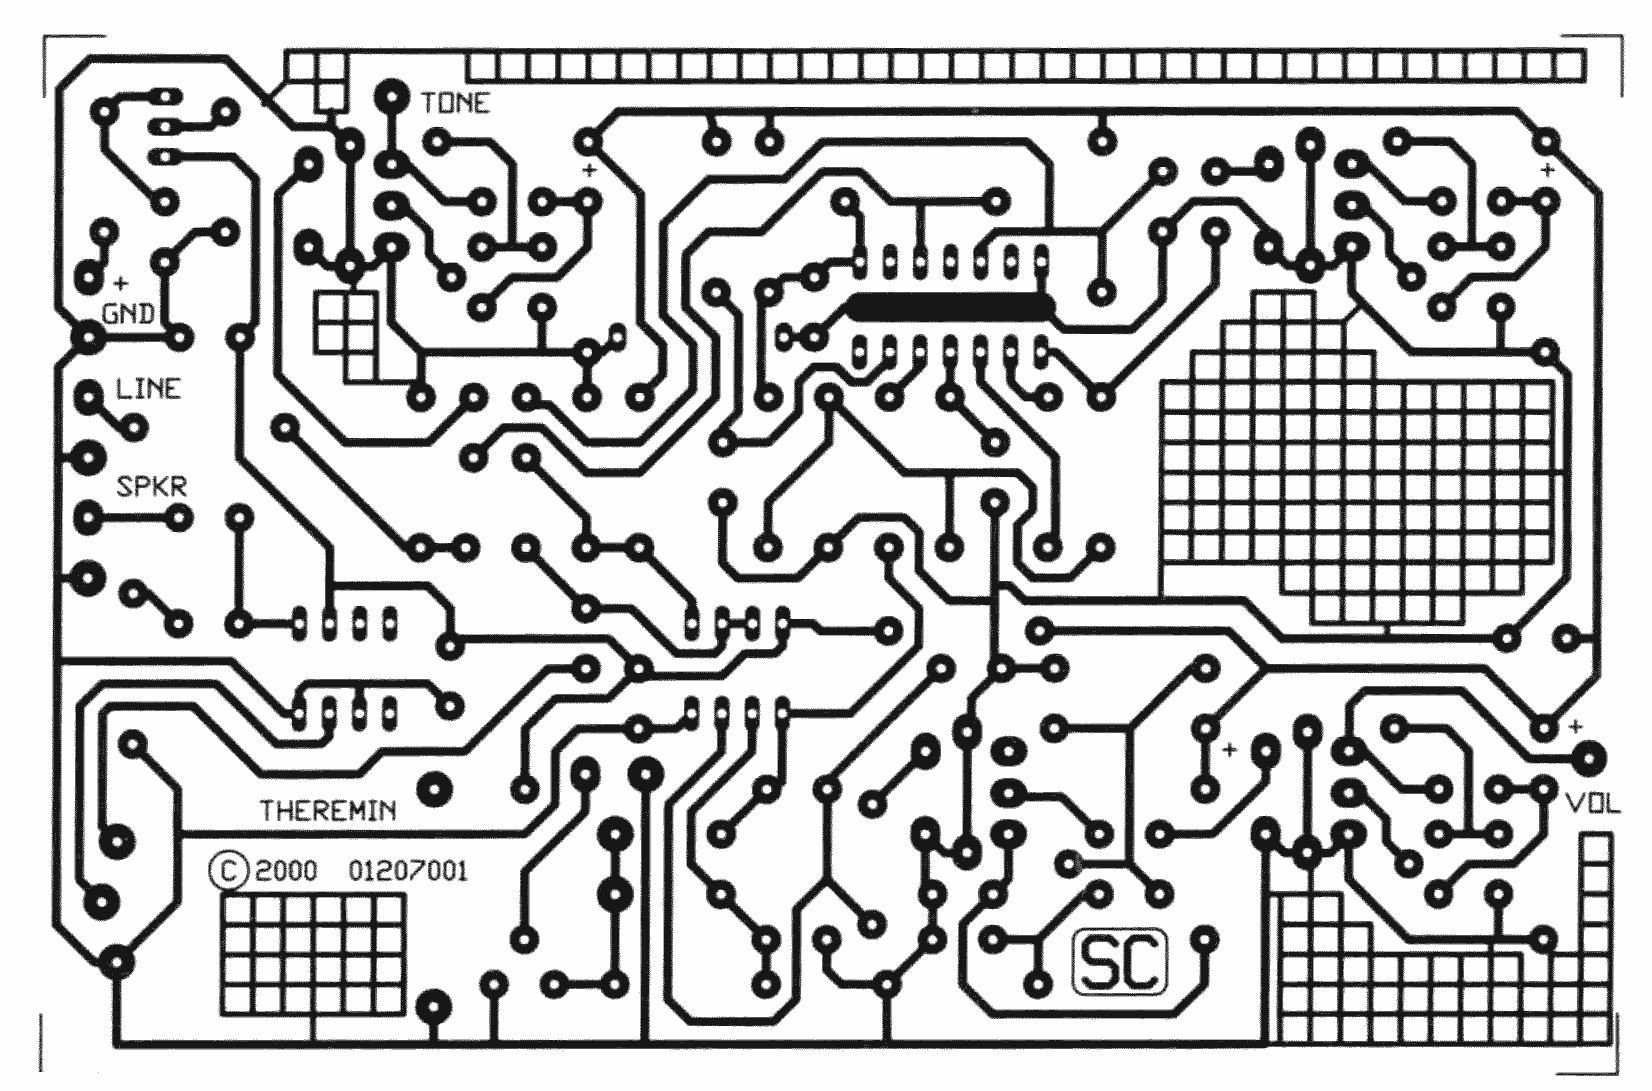 lace-circuit-boards-tattoodonkey.jpeg